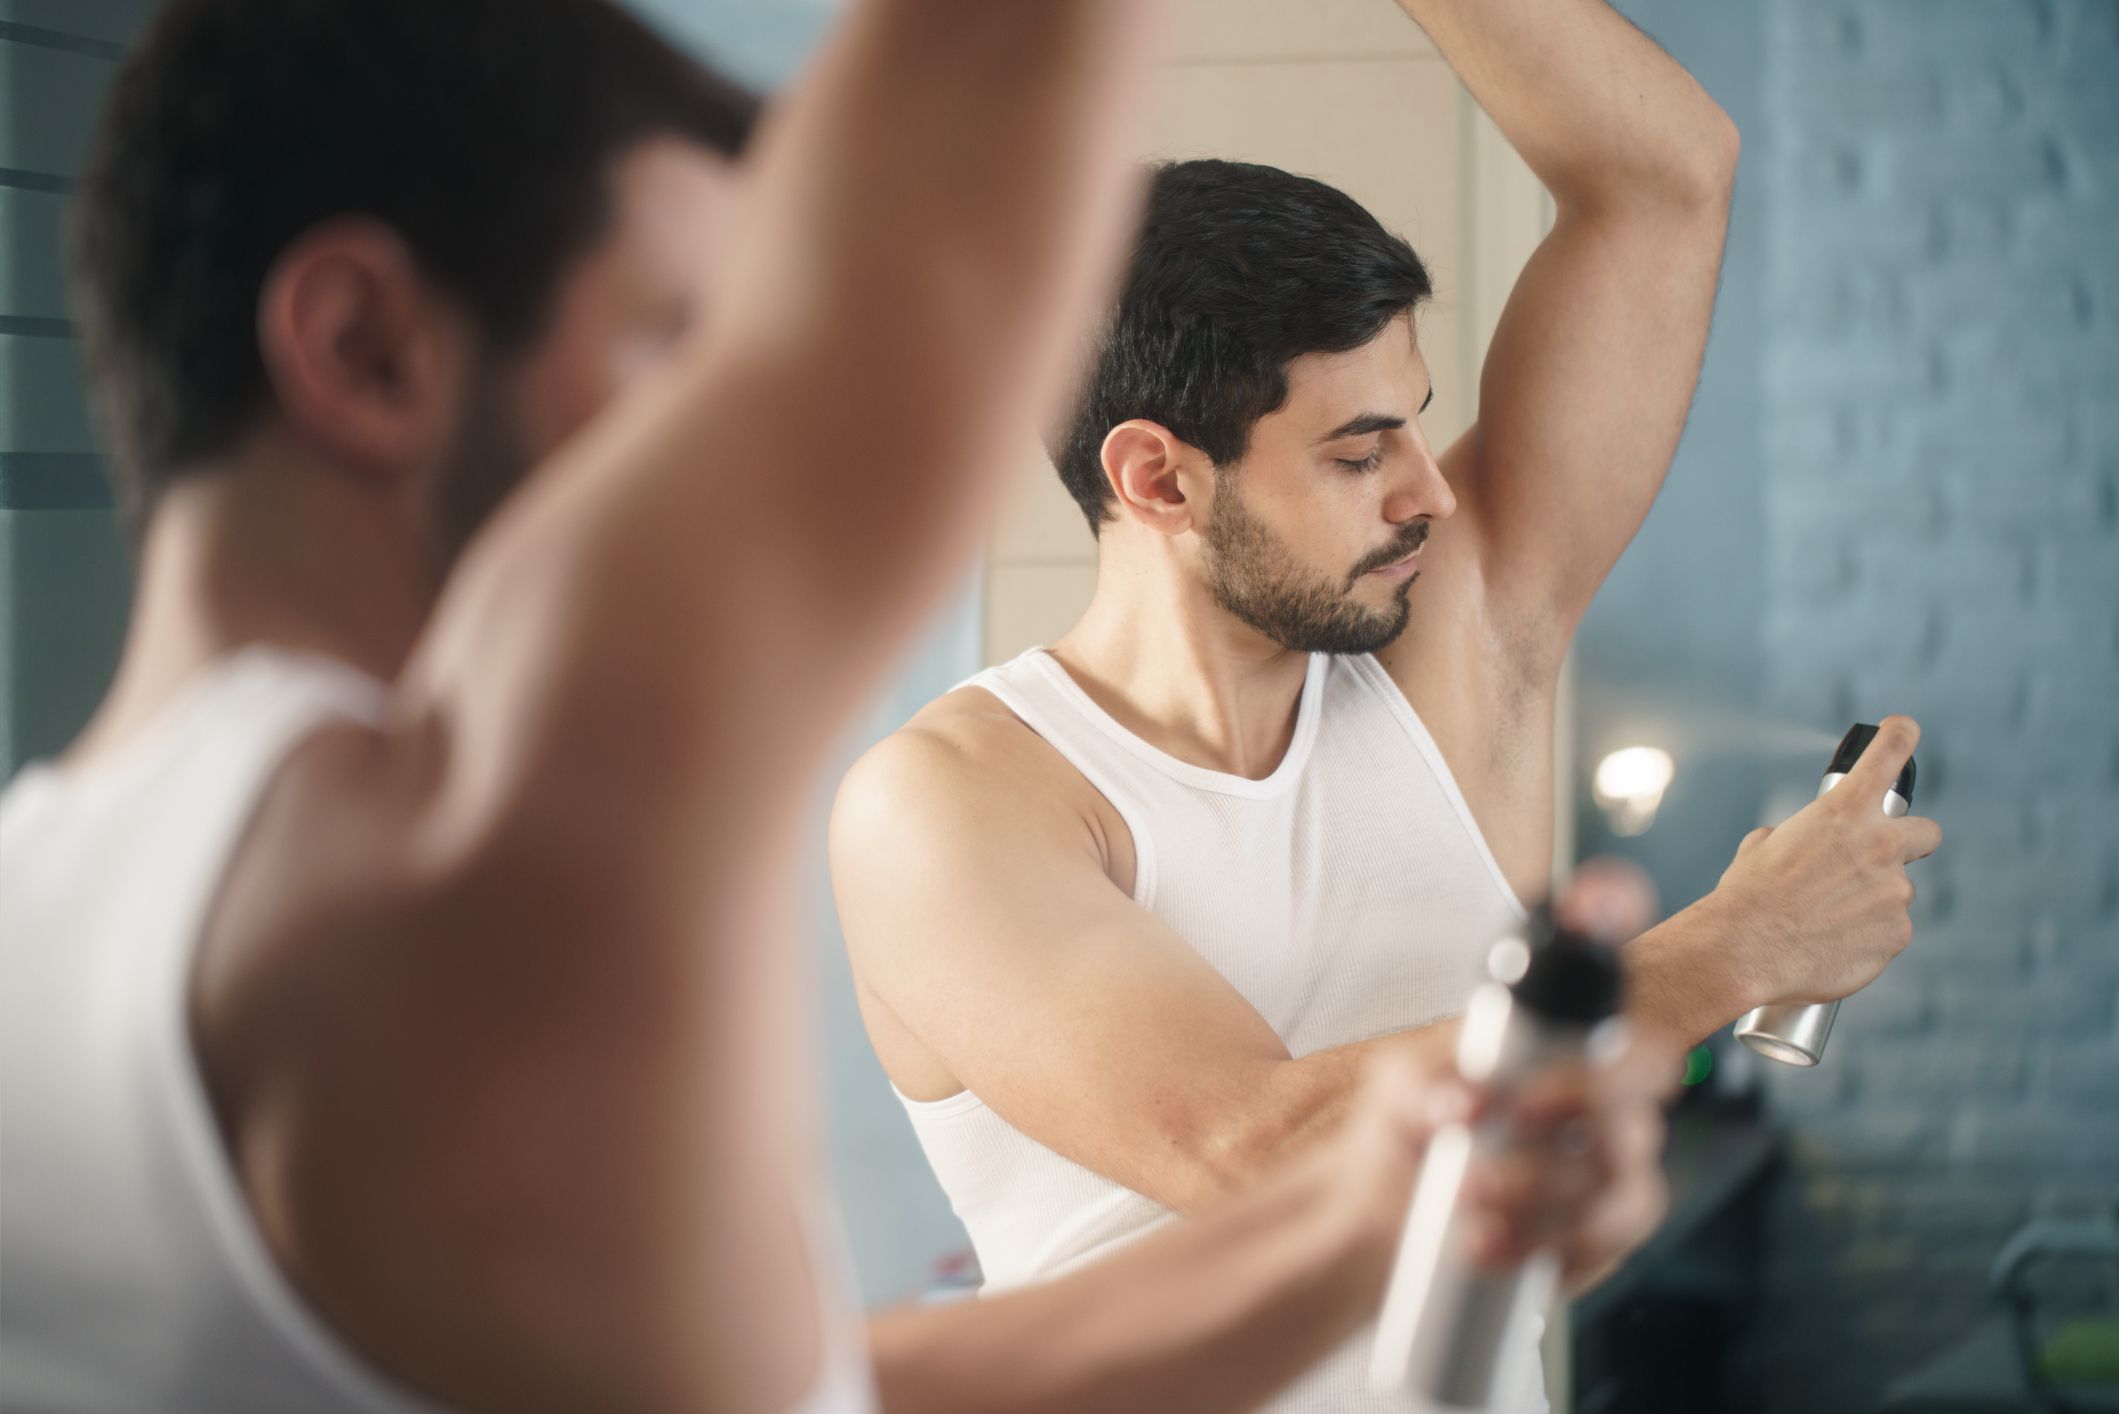 The 5 Best Deodorant Brands for Men